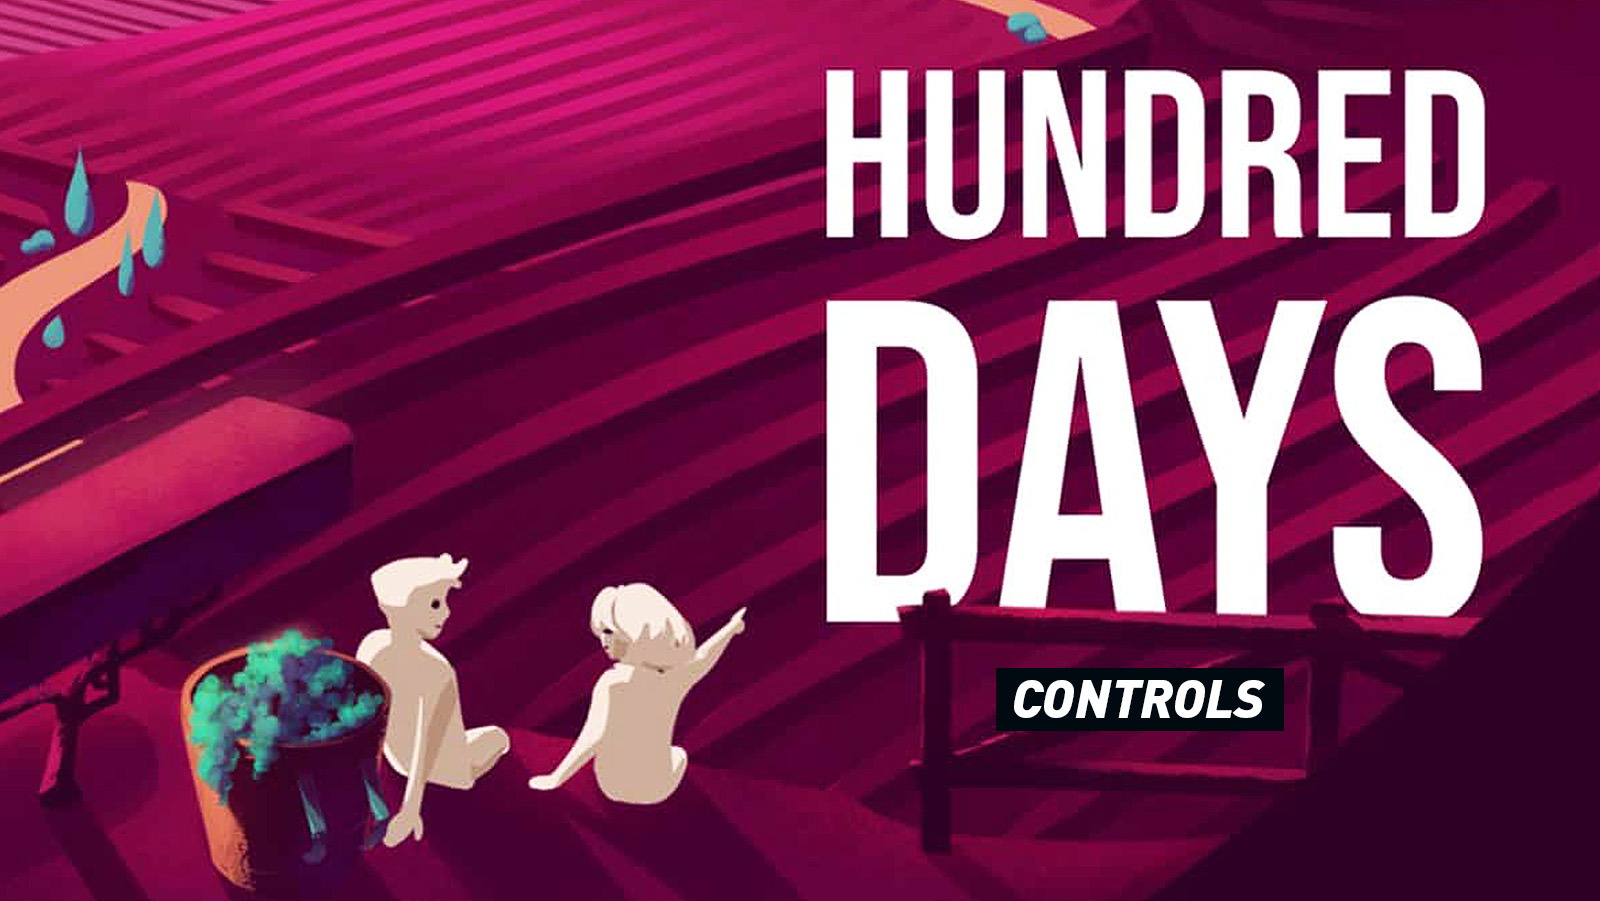 Hundred Days - Winemaking Simulator Controls